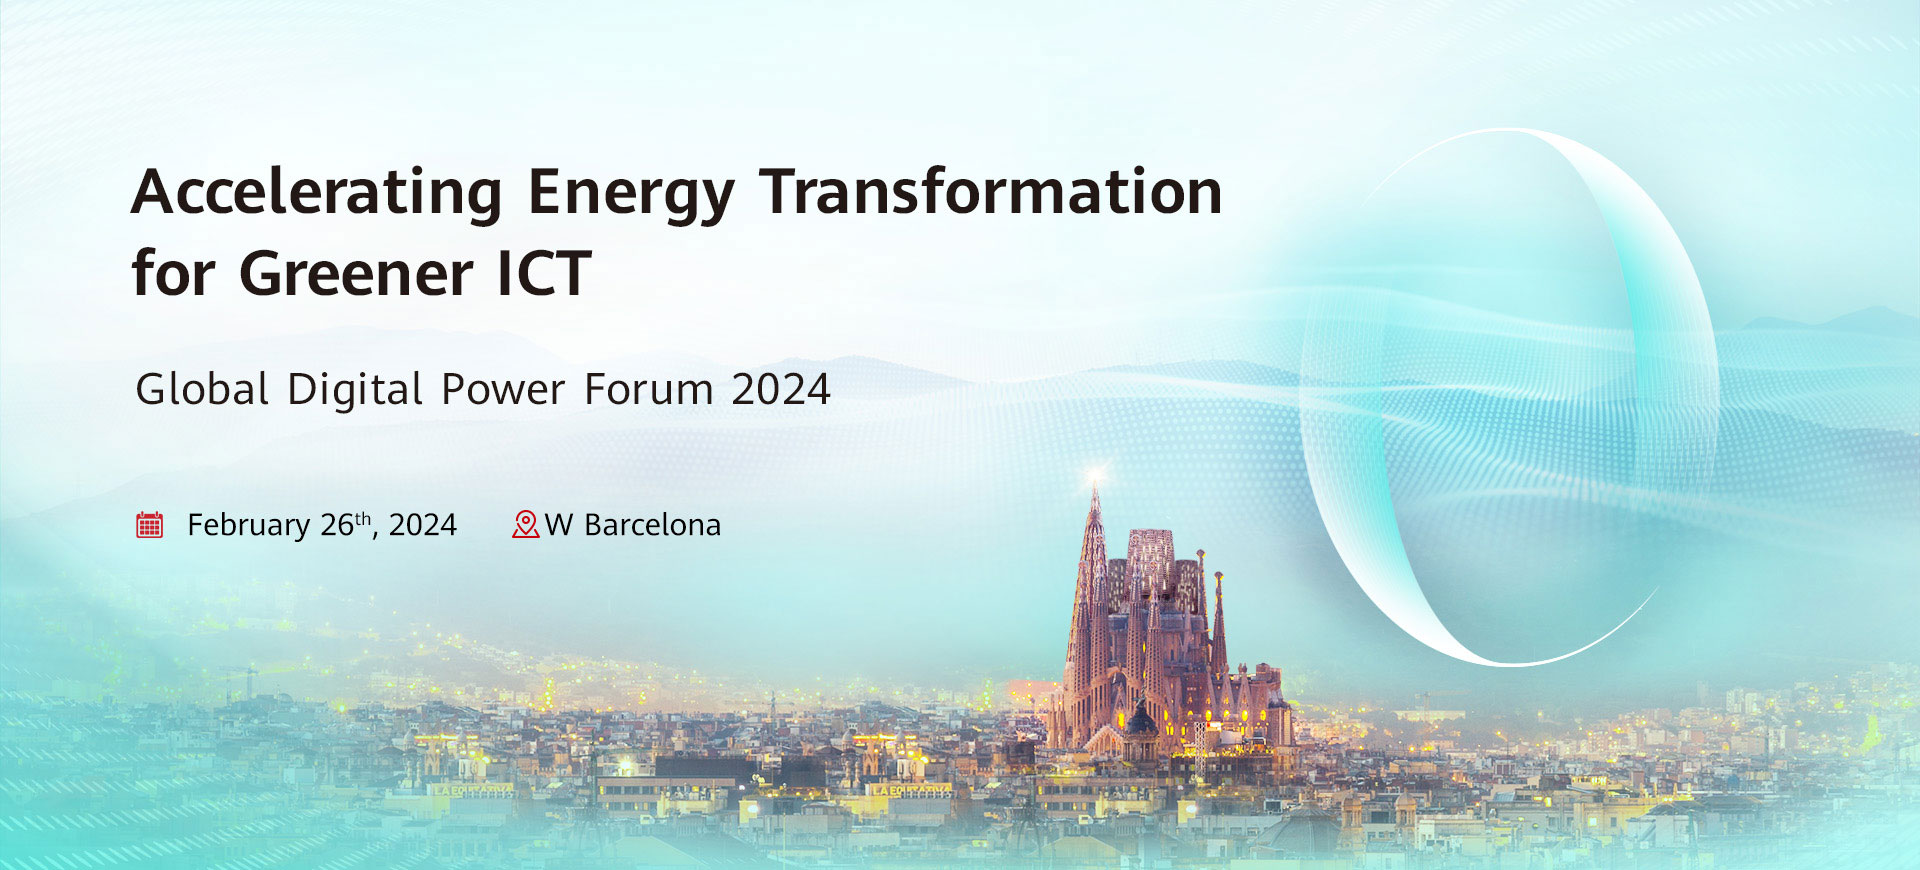 Global Digital Power Forum 2024 | Huawei Digital Power